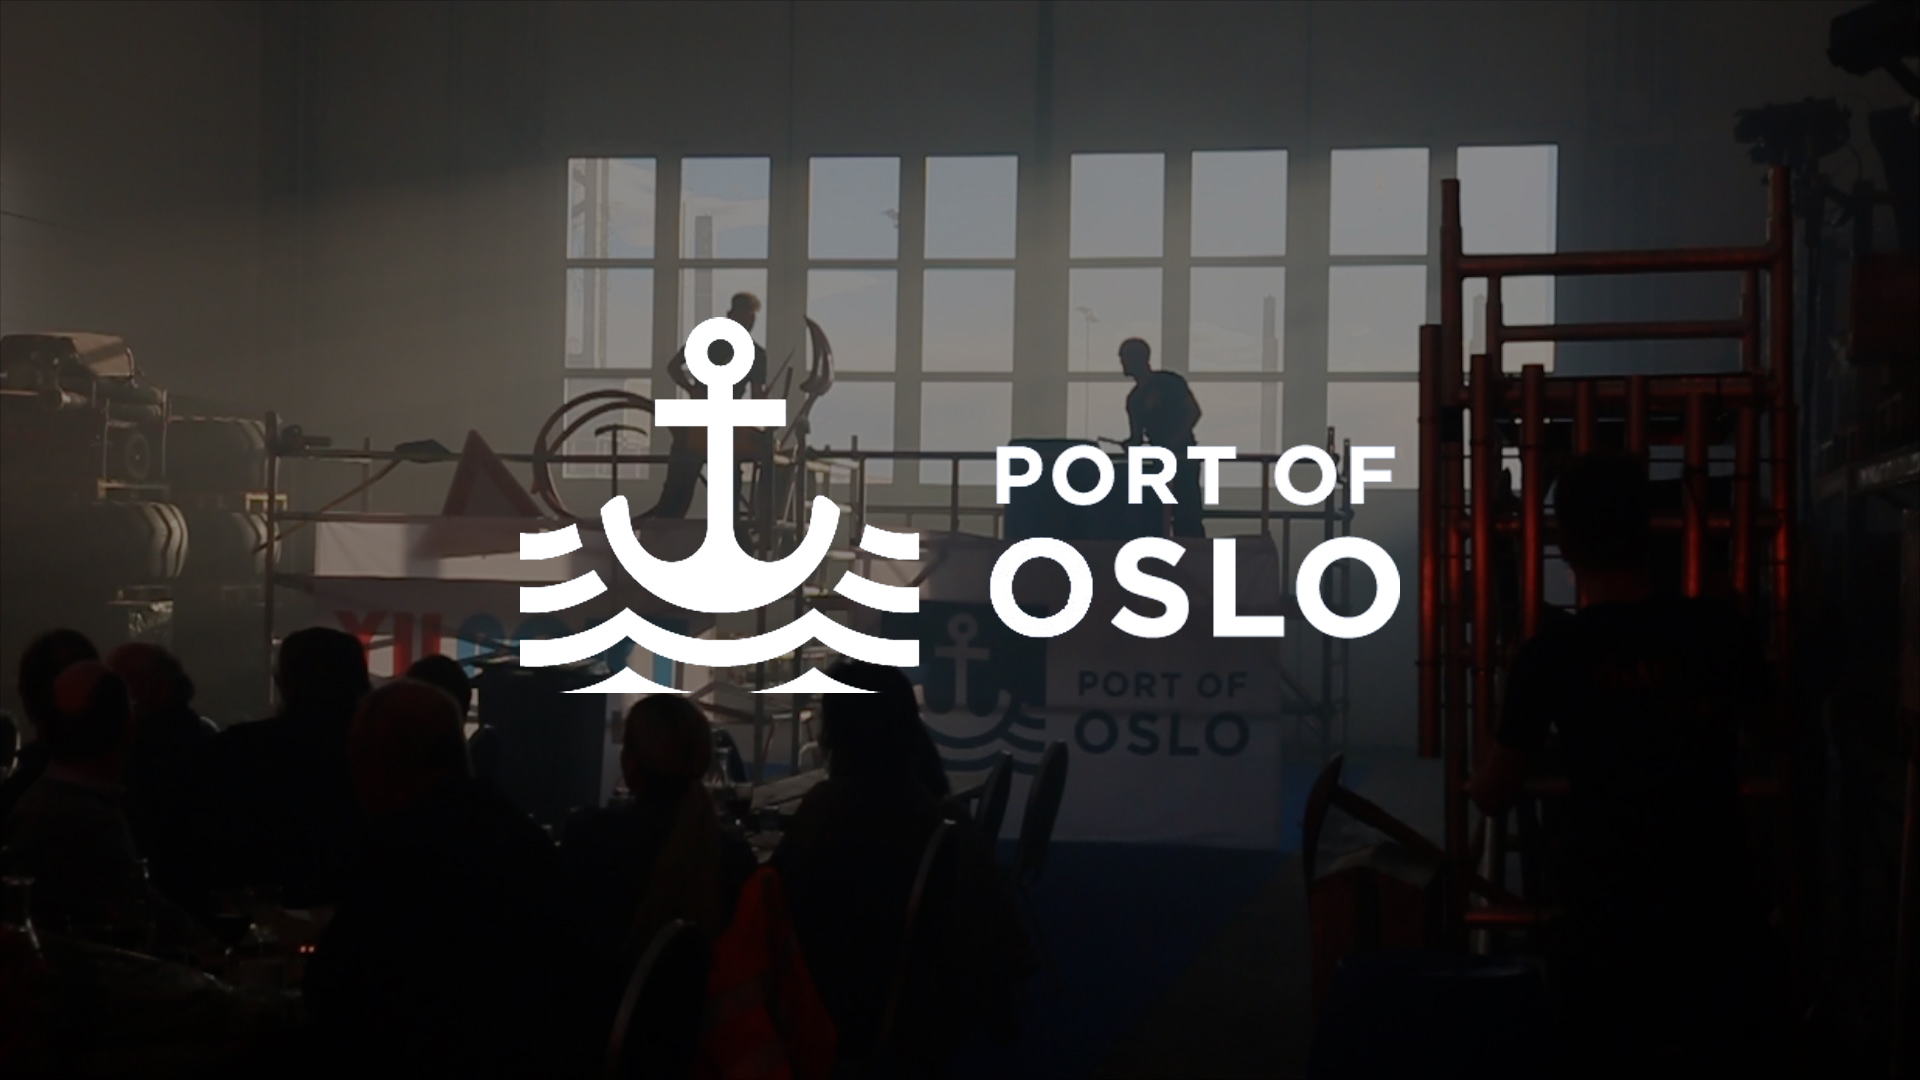 Med en royal indvielse af en containerterminal i Oslo ønskede arrangørerne et show fremført på inventaret i den skibshangar hvor indvielsesfesten foregik. Vi blev fløjet ind dagen før og havde 24 timer til at forberede et brag af et show.